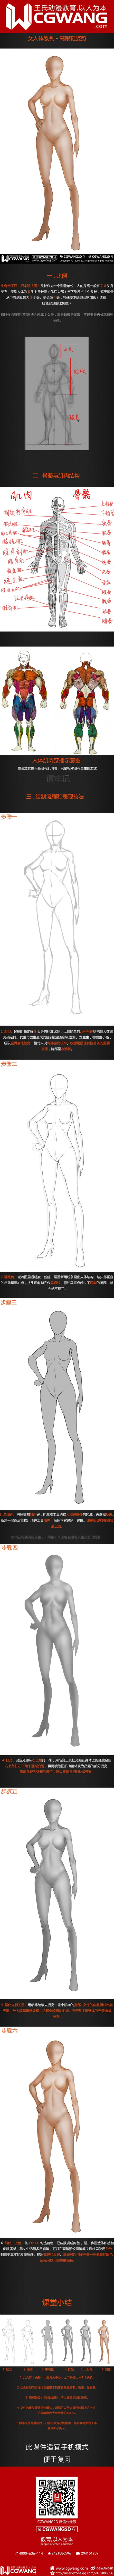 原画、插画、漫画、人体、高跟鞋姿势、CGWANG王氏教育集团、旺旺哒教程系列